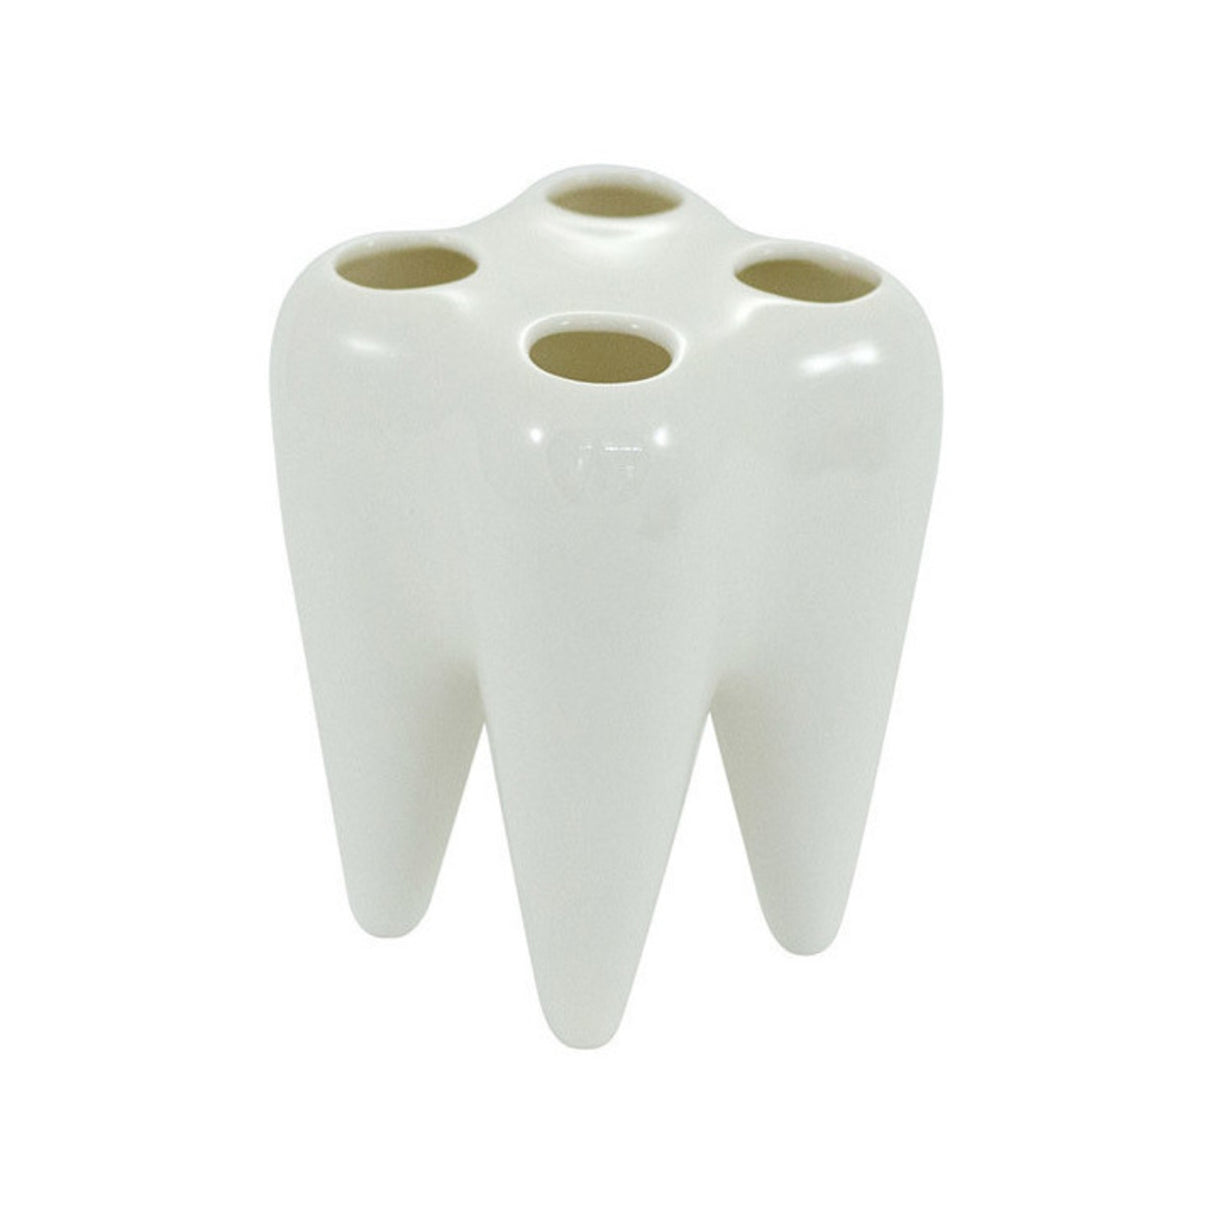 Keramik Zahnbürstenhalter - jetzt – Kaufe und spare